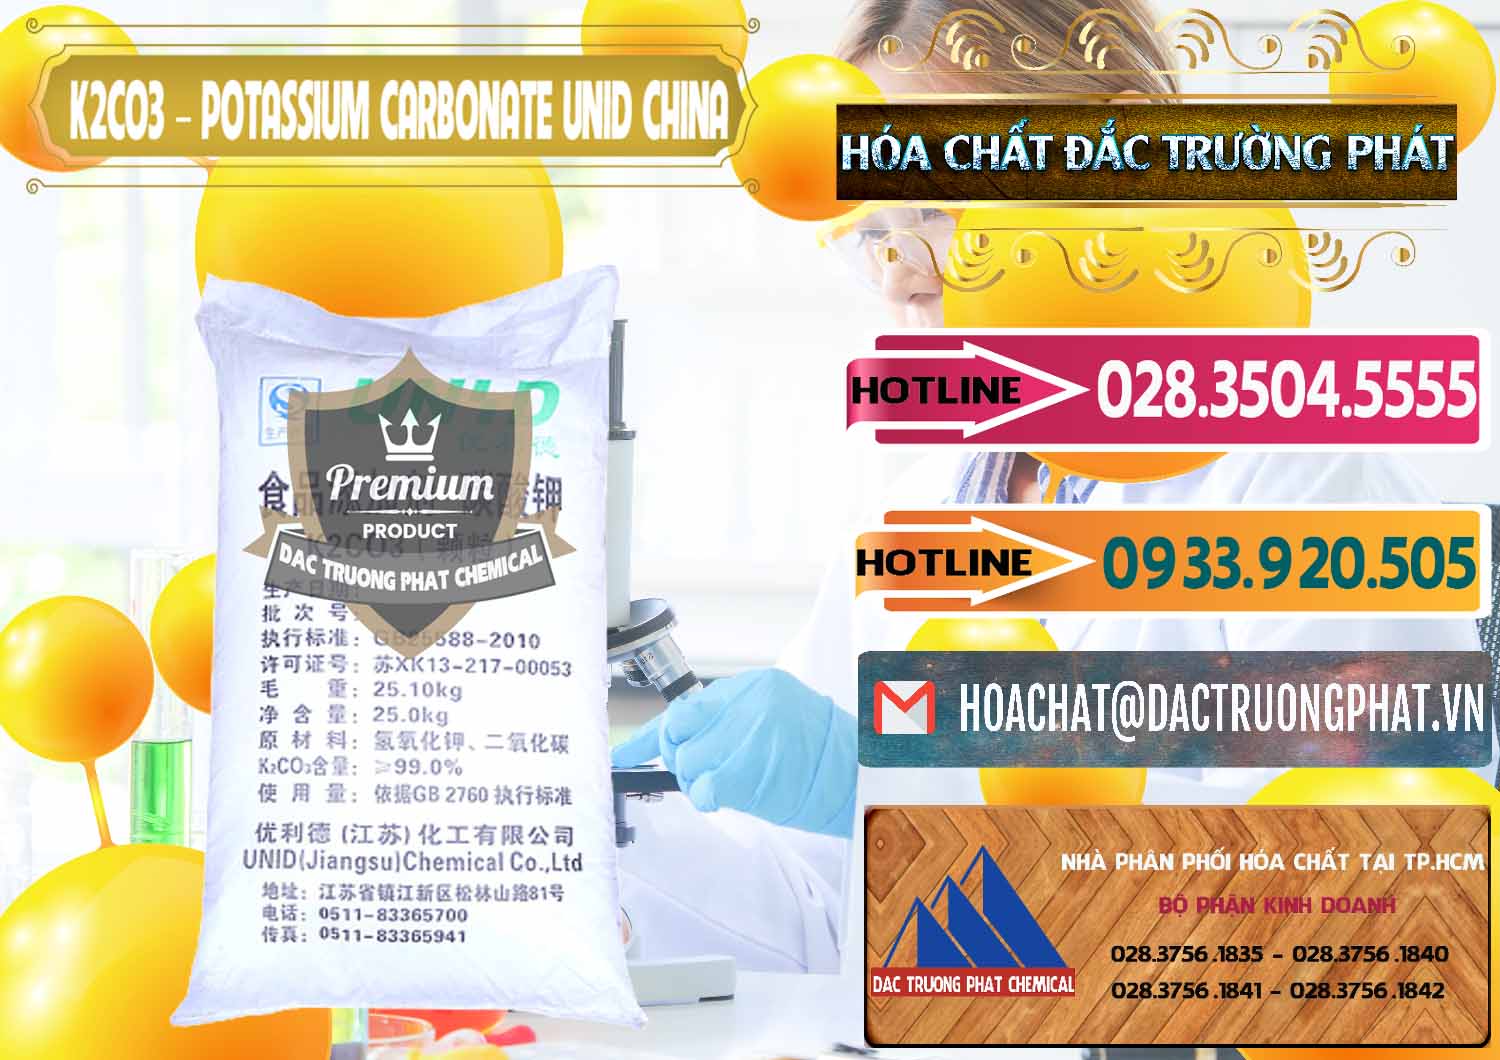 Cty nhập khẩu ( bán ) K2Co3 – Potassium Carbonate UNID Trung Quốc China - 0475 - Cty cung cấp & kinh doanh hóa chất tại TP.HCM - dactruongphat.vn